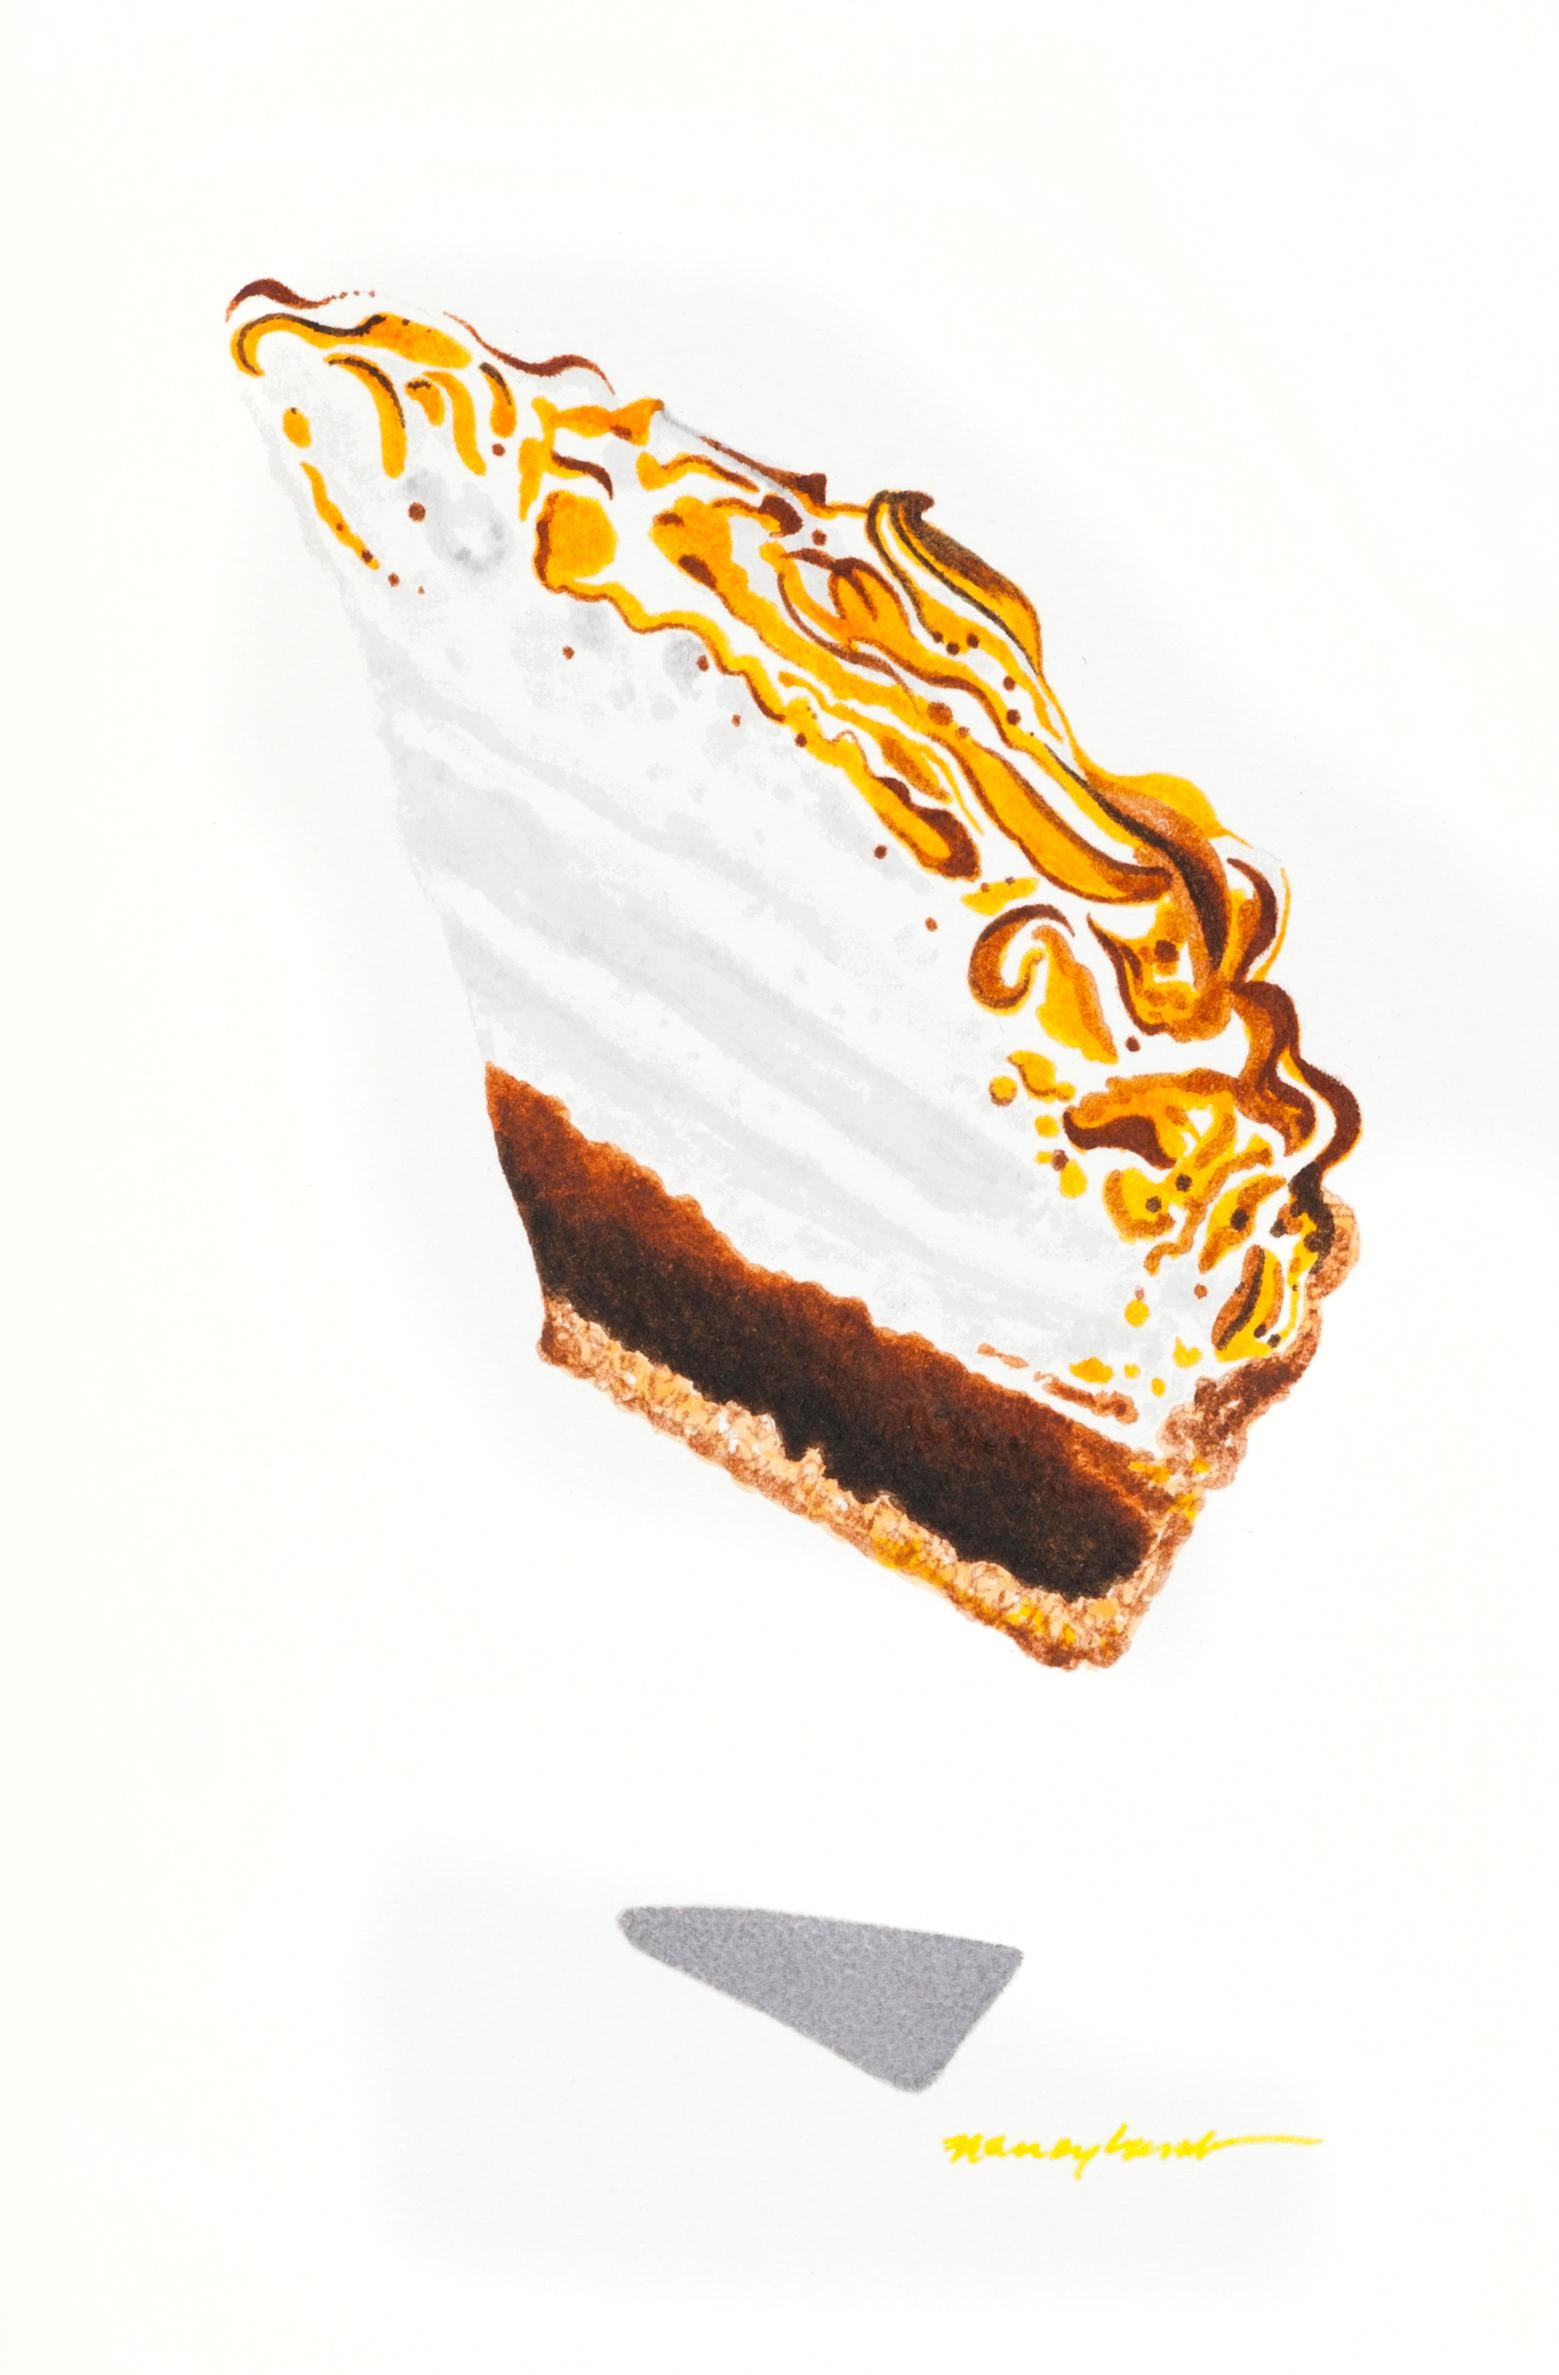 Still-Life Nancy Lamb  - Petite pièce à dessert contemporaine à l'aquarelle en forme de chocolat idéale pour la cuisine, le bar et le bar 